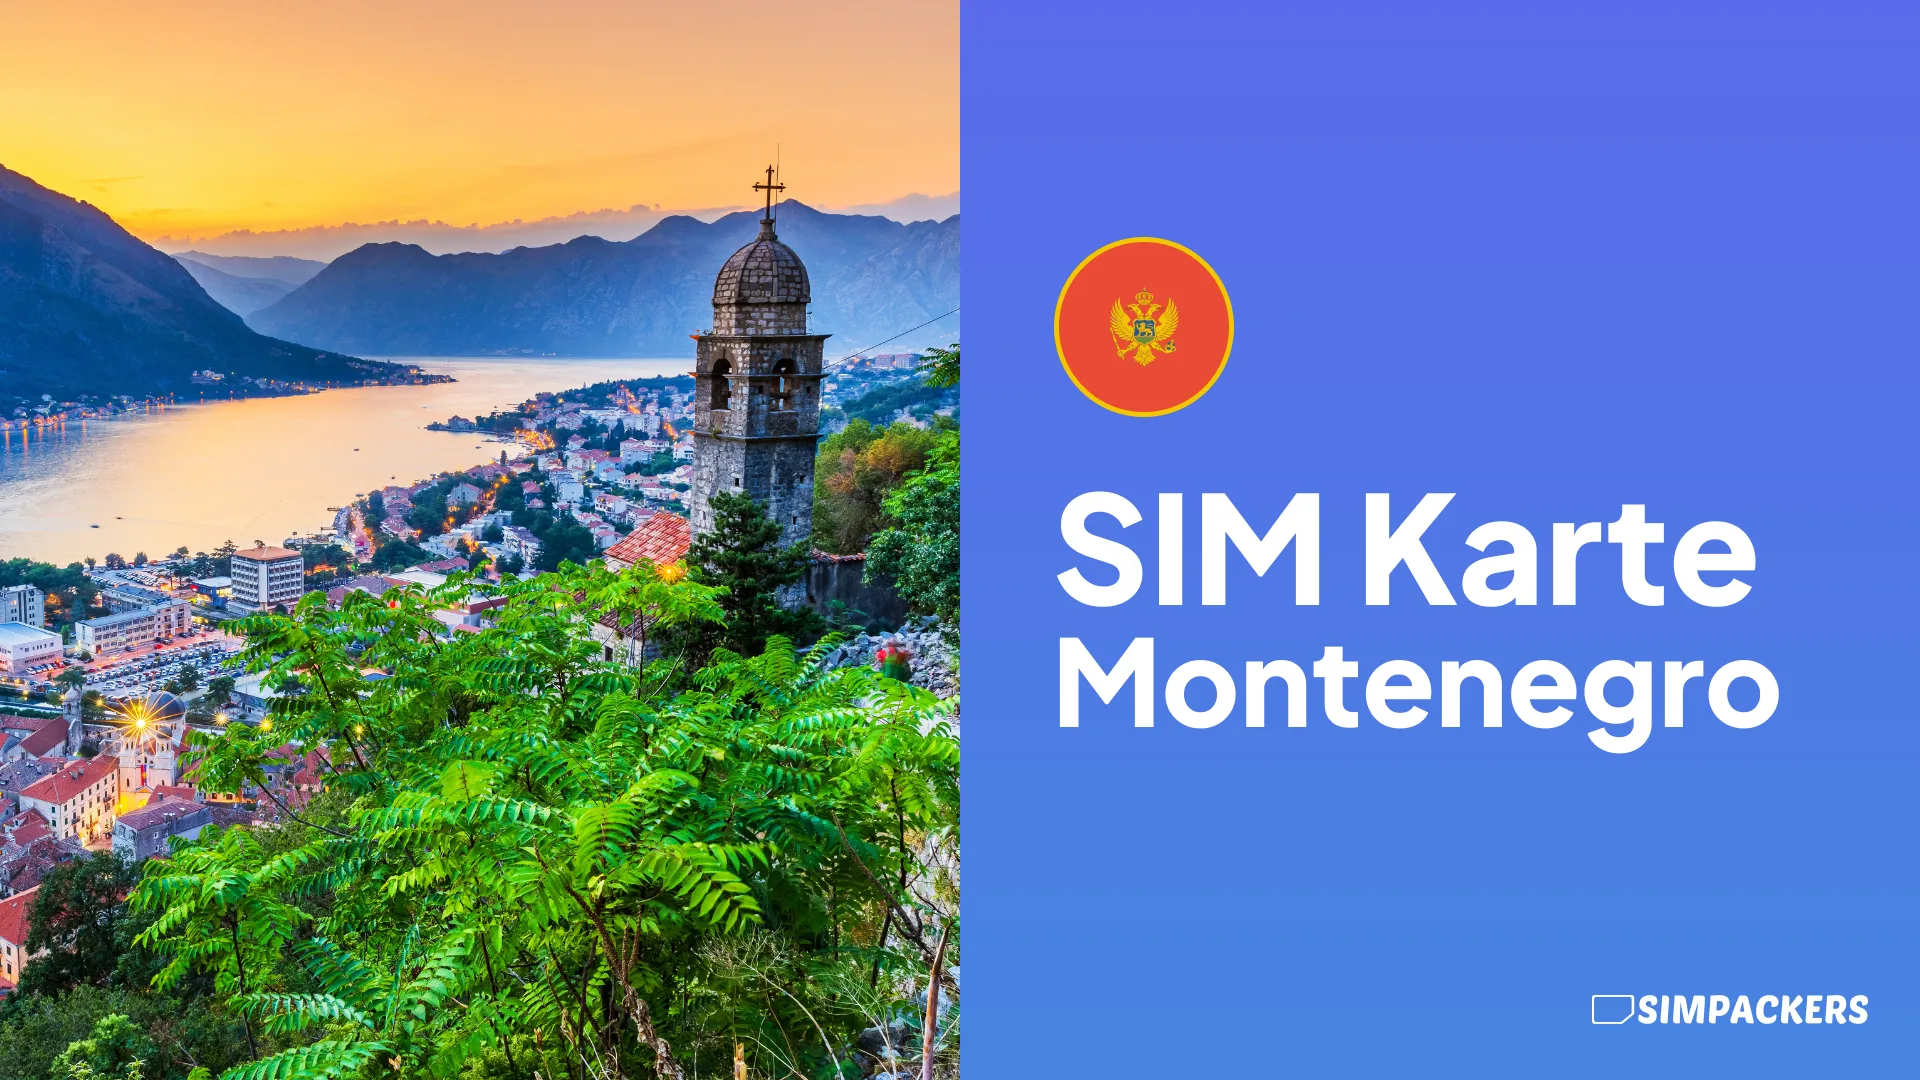 DE/FEATURED_IMAGES/sim-karte-montenegro.webp